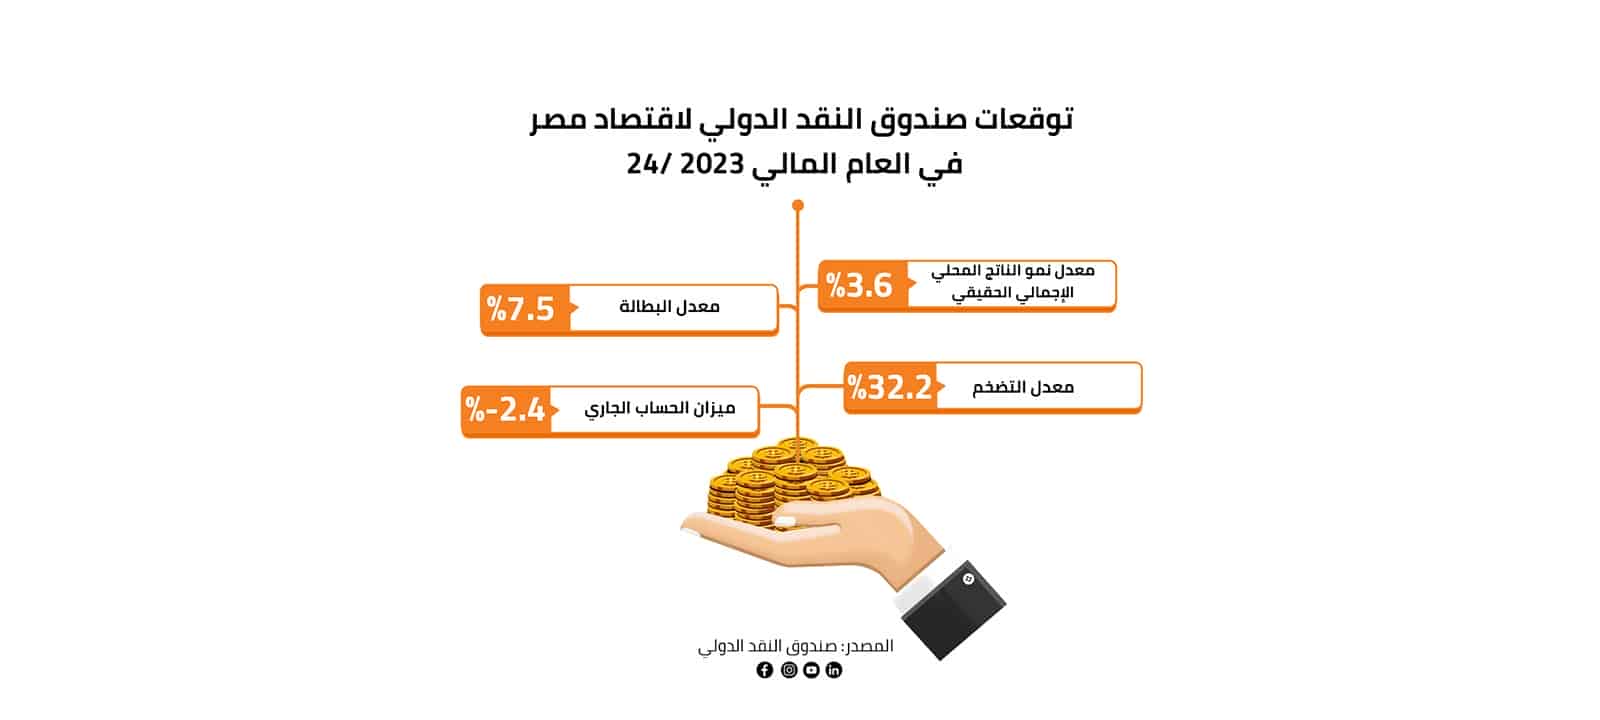 توقعات صندوق النقد الدولي لاقتصاد مصر في العام المالي 2023/24 